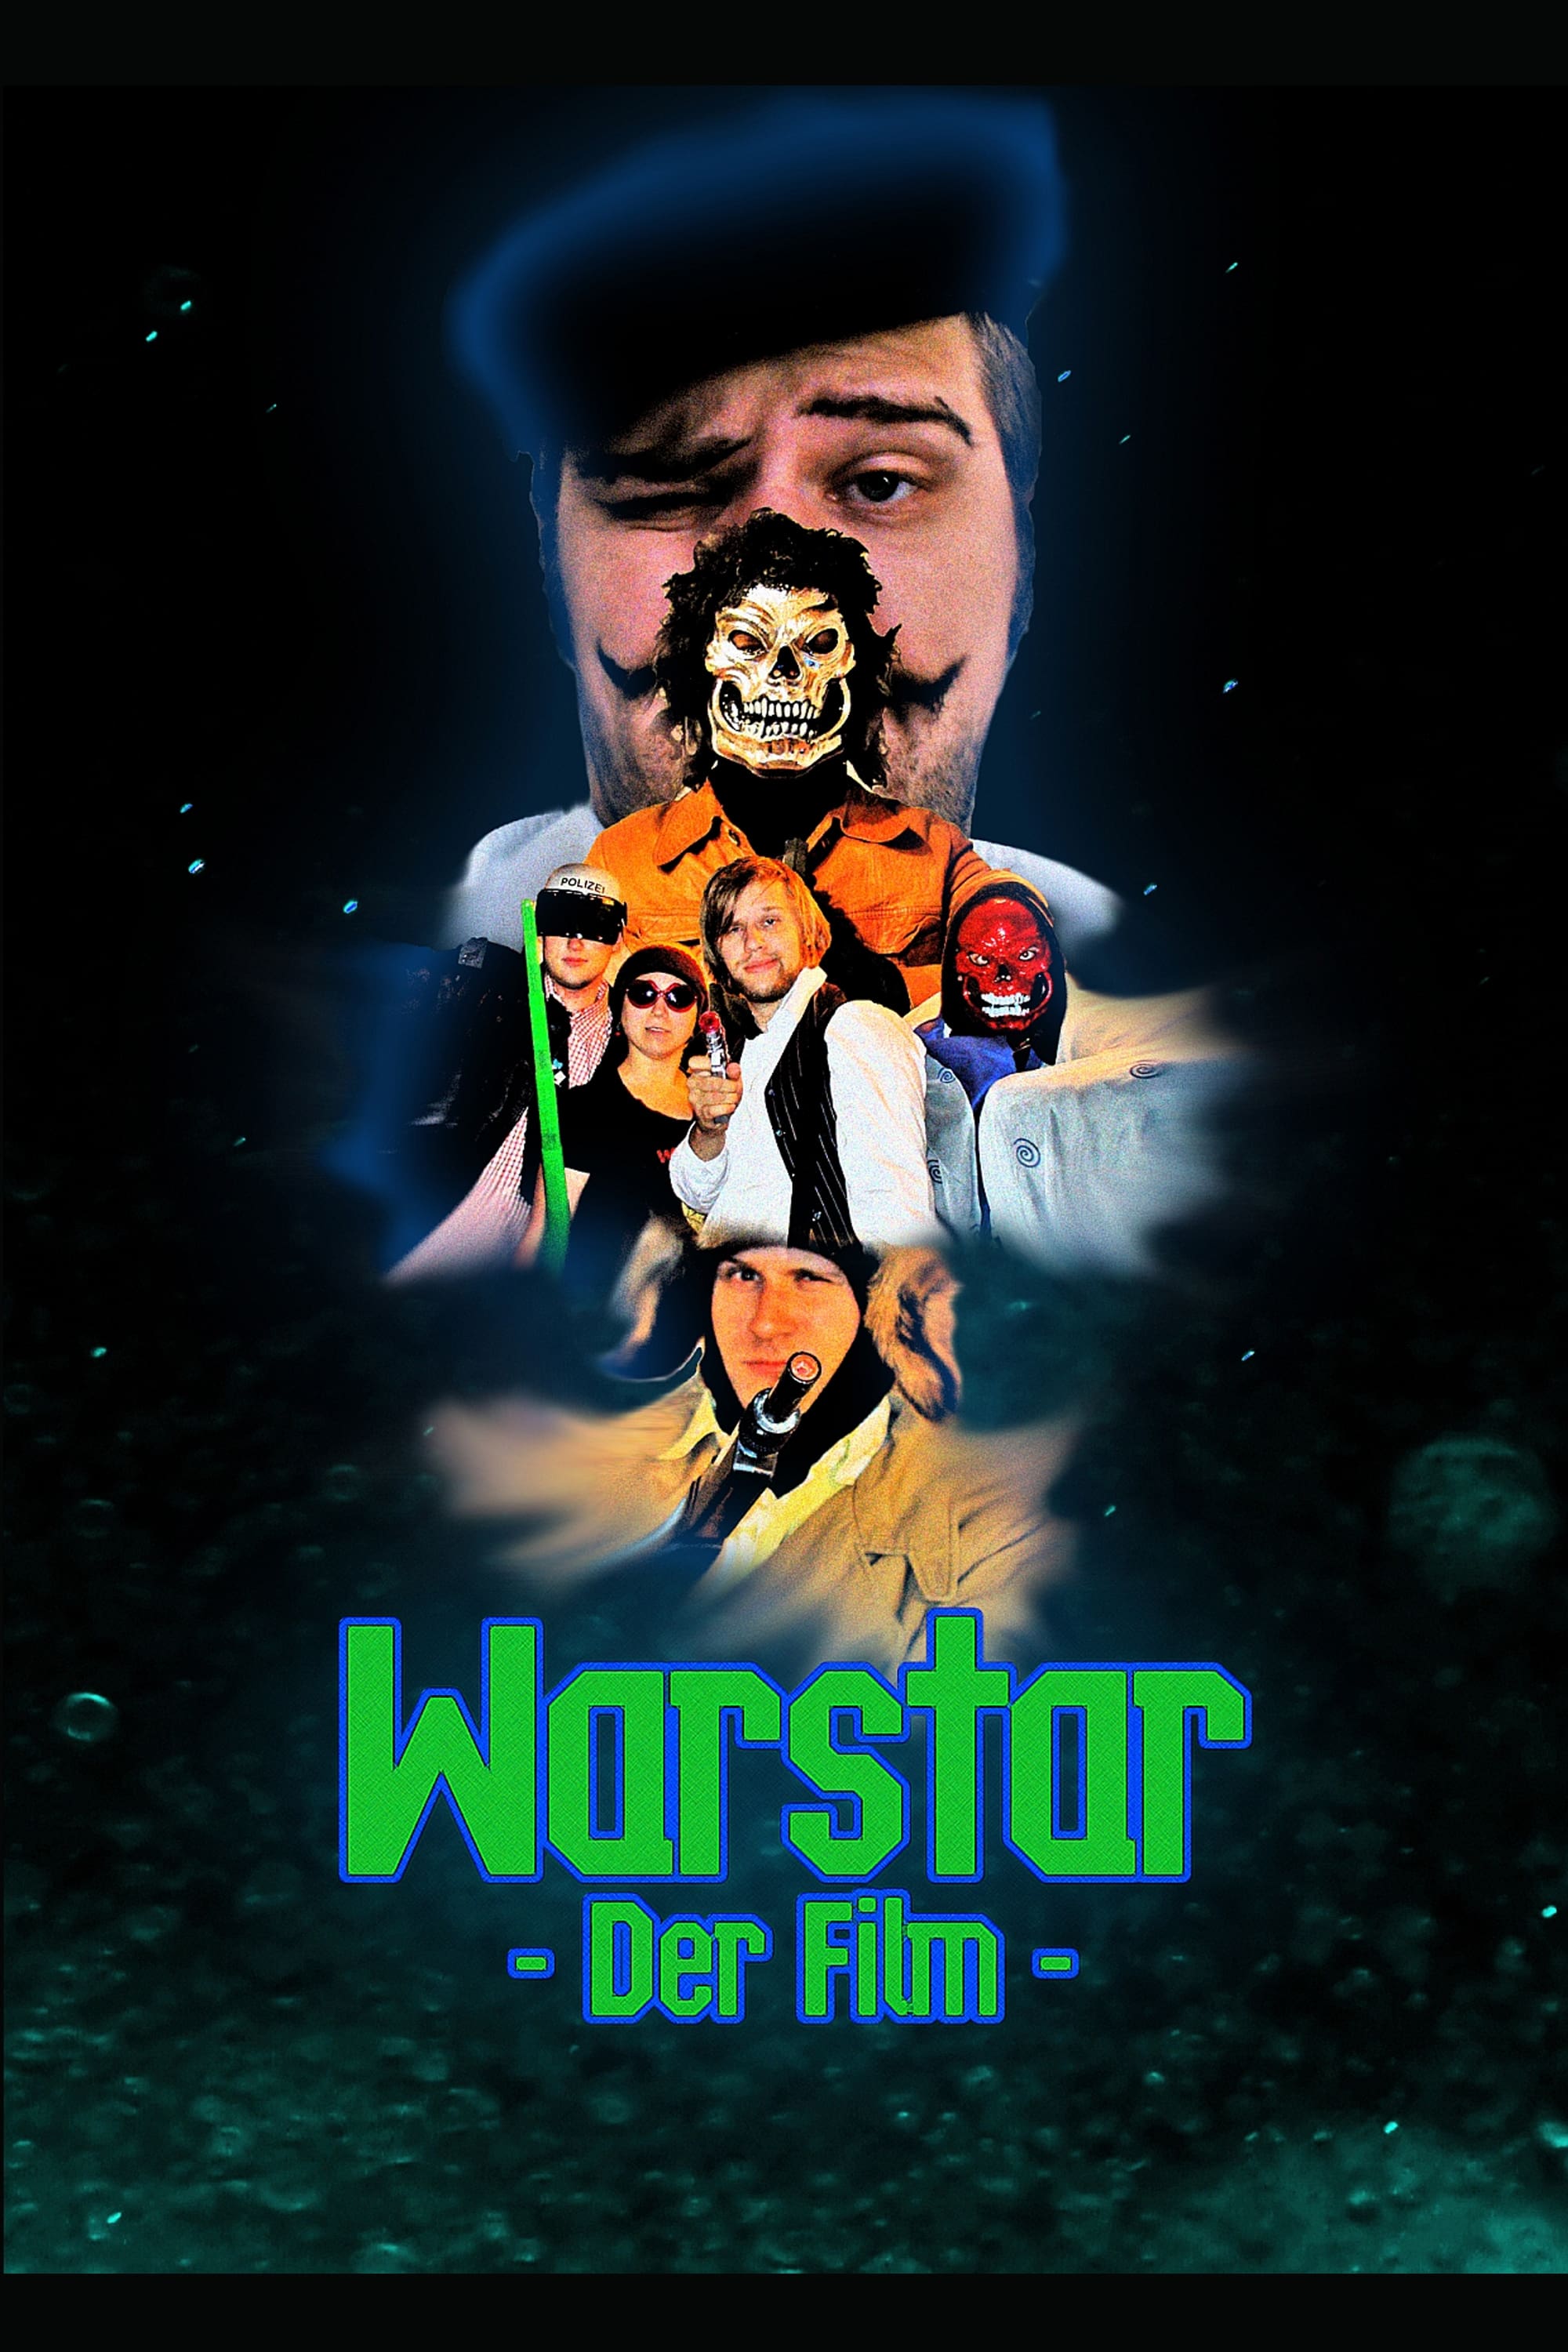 Warstar - Der Film